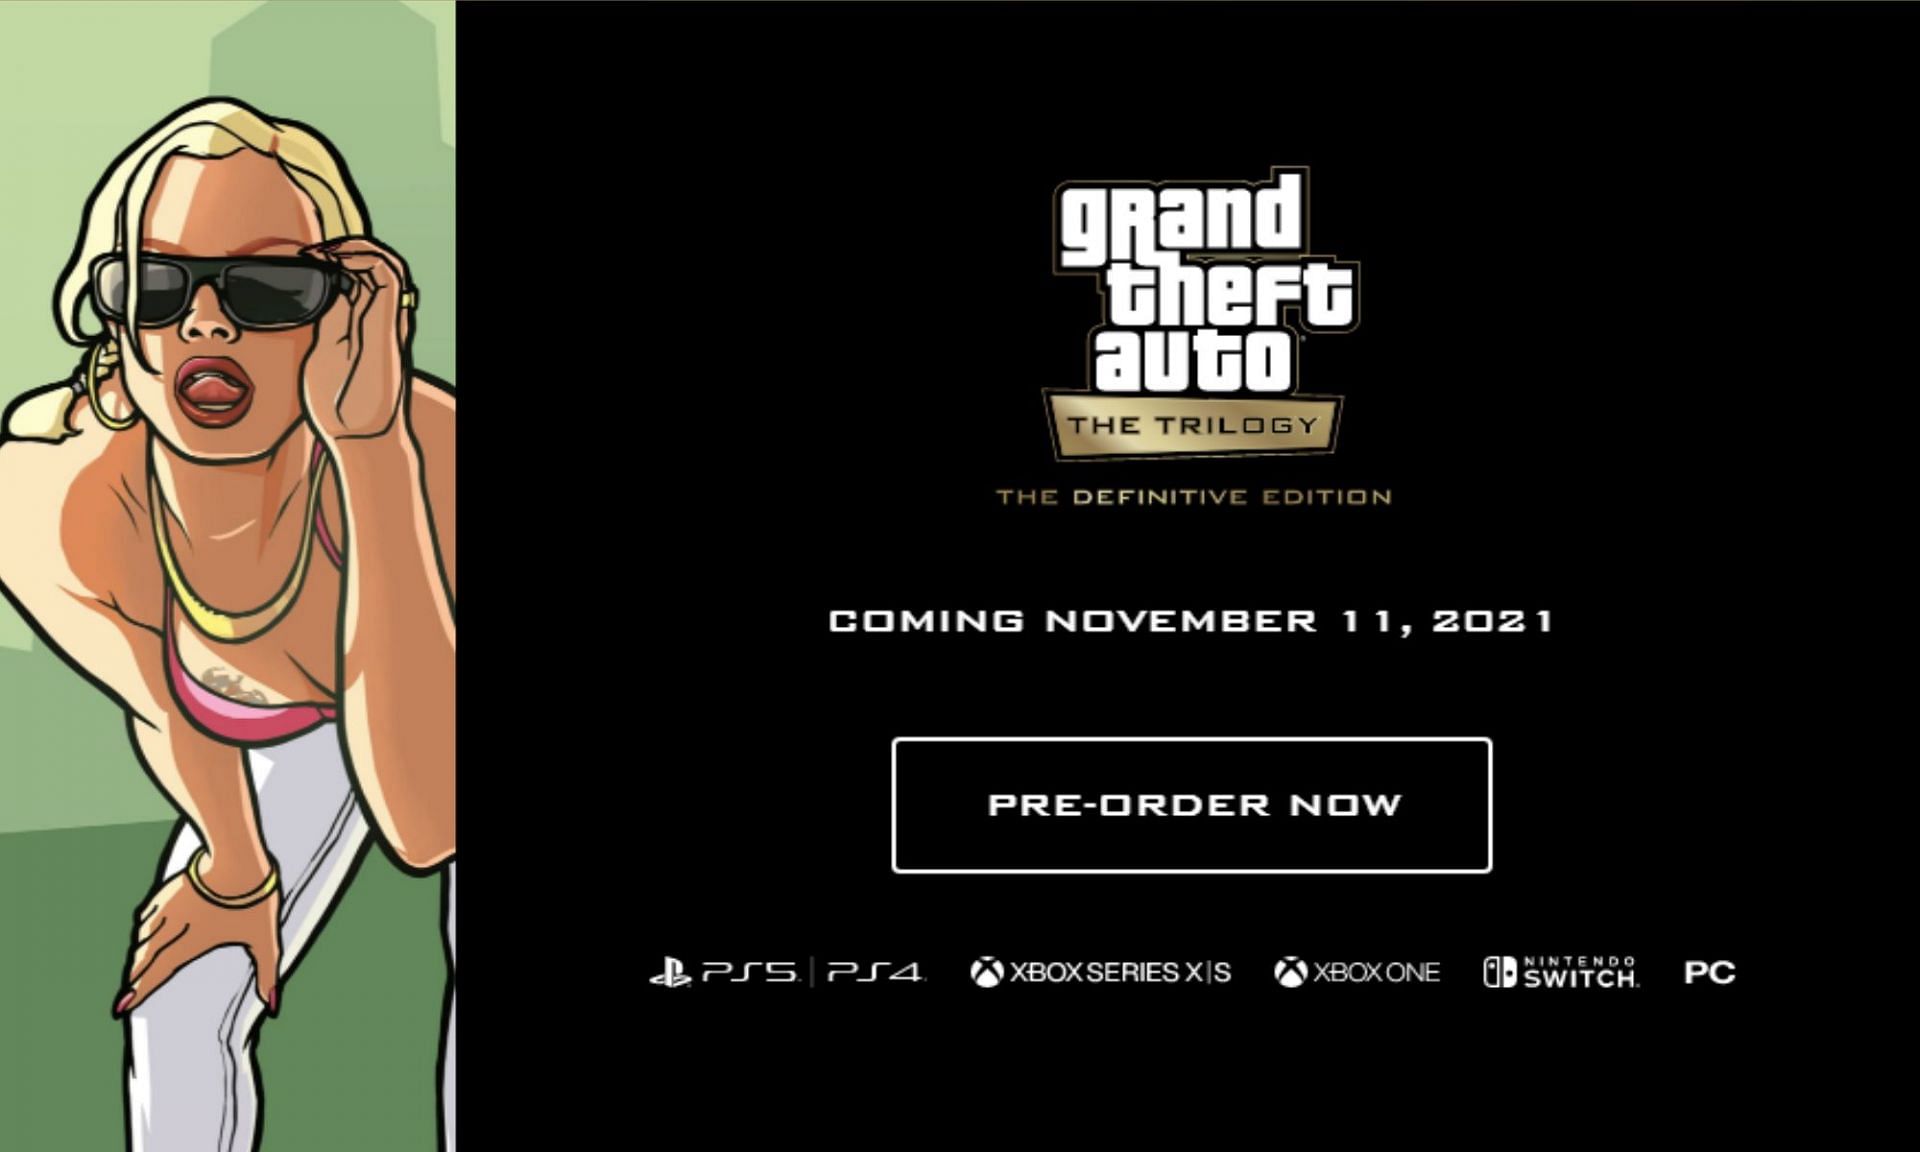 Grand Theft edition - Auto: – grand Games, definitive The Definitive theft iii Coming Edition Trilogy Rockstar auto November the 11 The